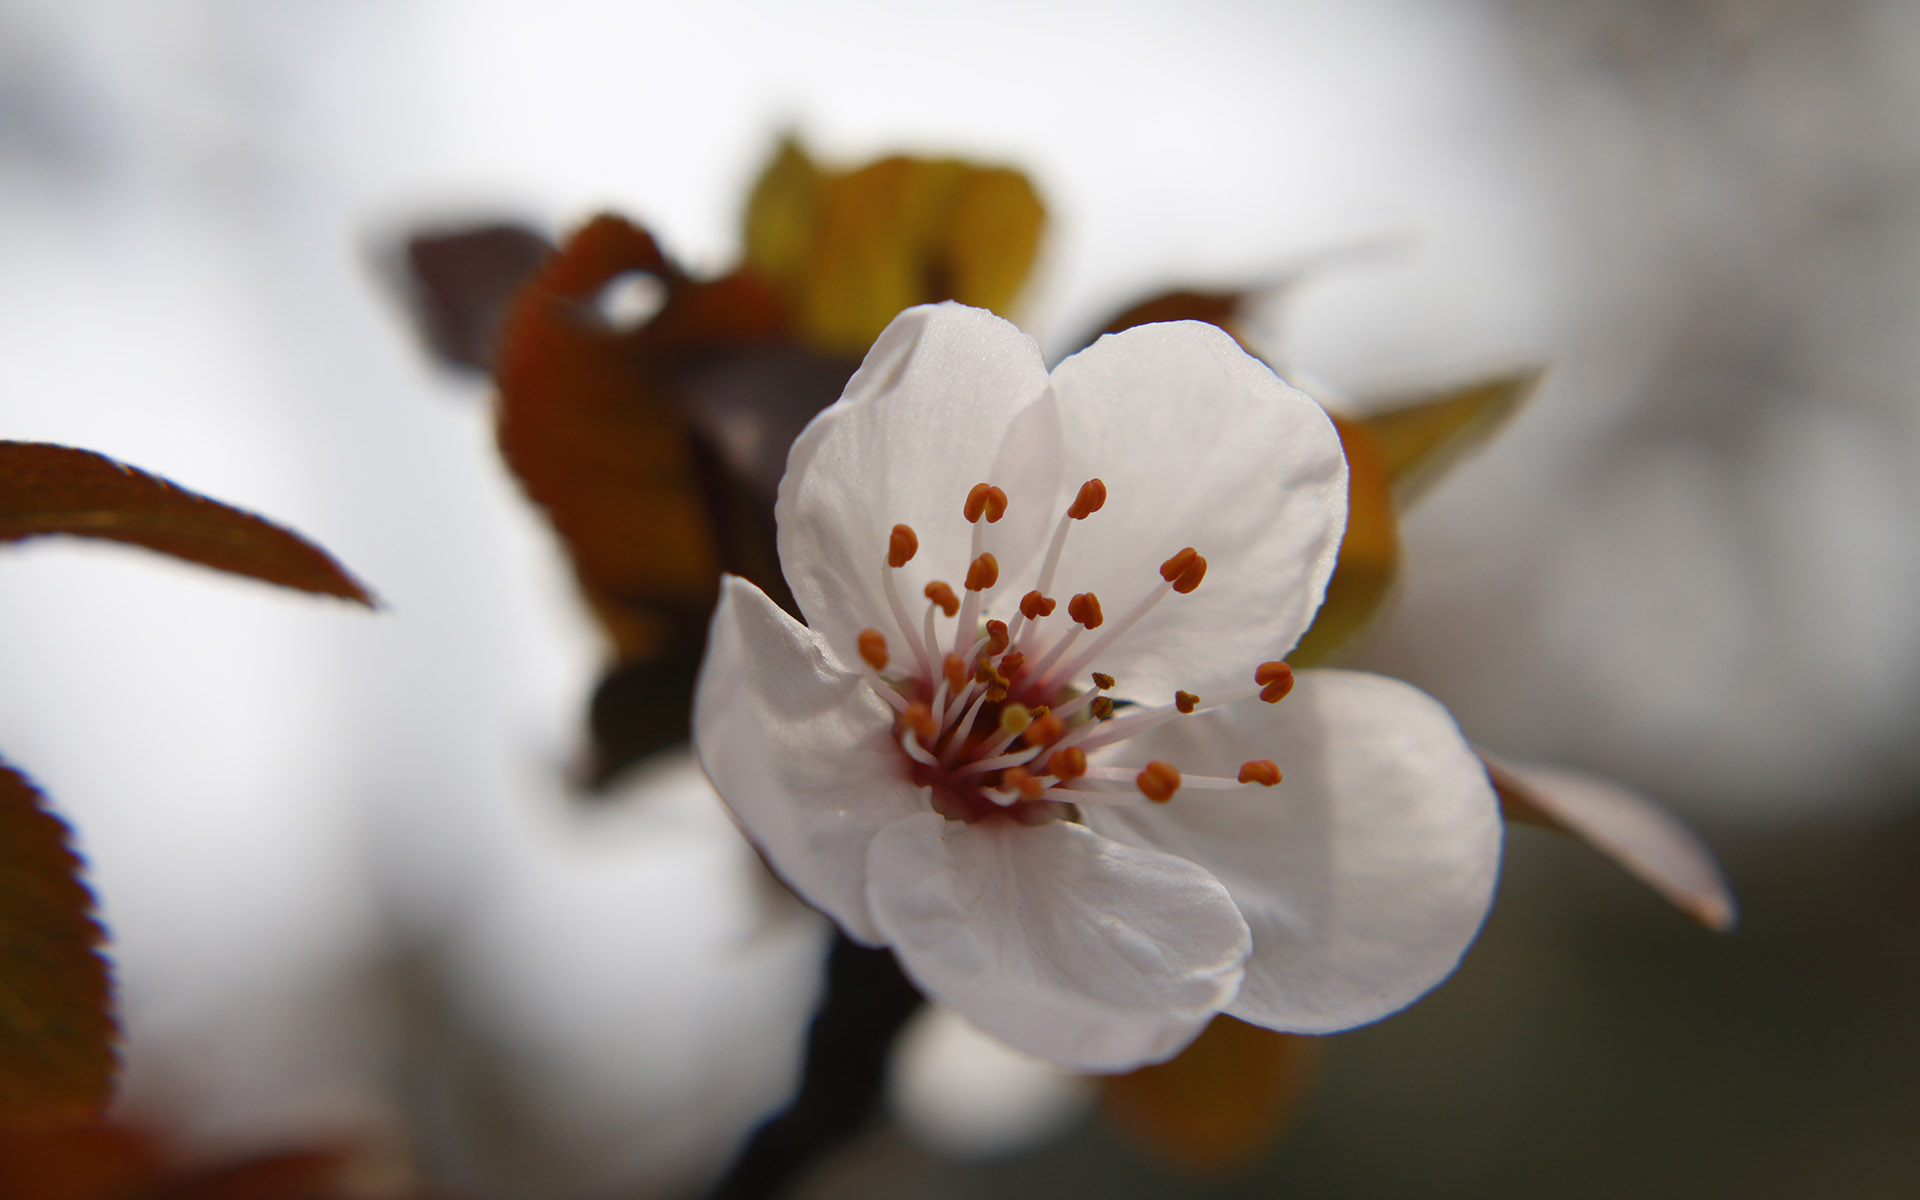 美丽图片素材 唯美纯白樱花高清摄影图片(8)